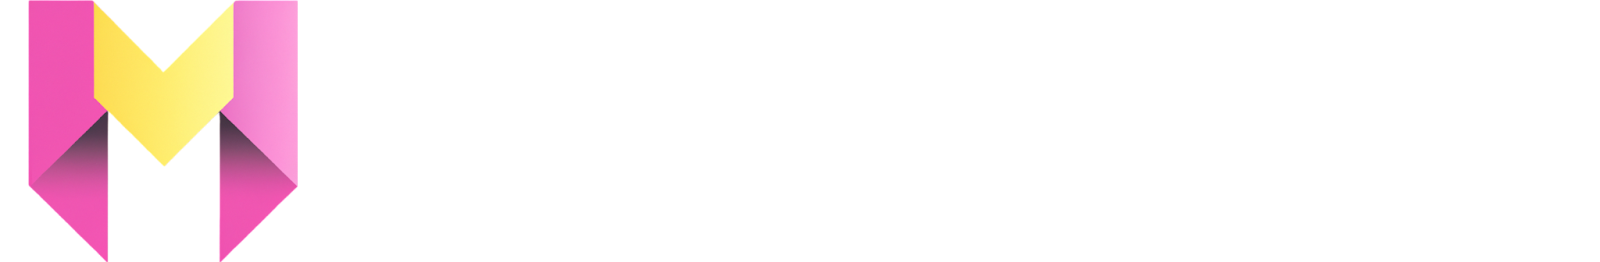 MakeLogoAI logo